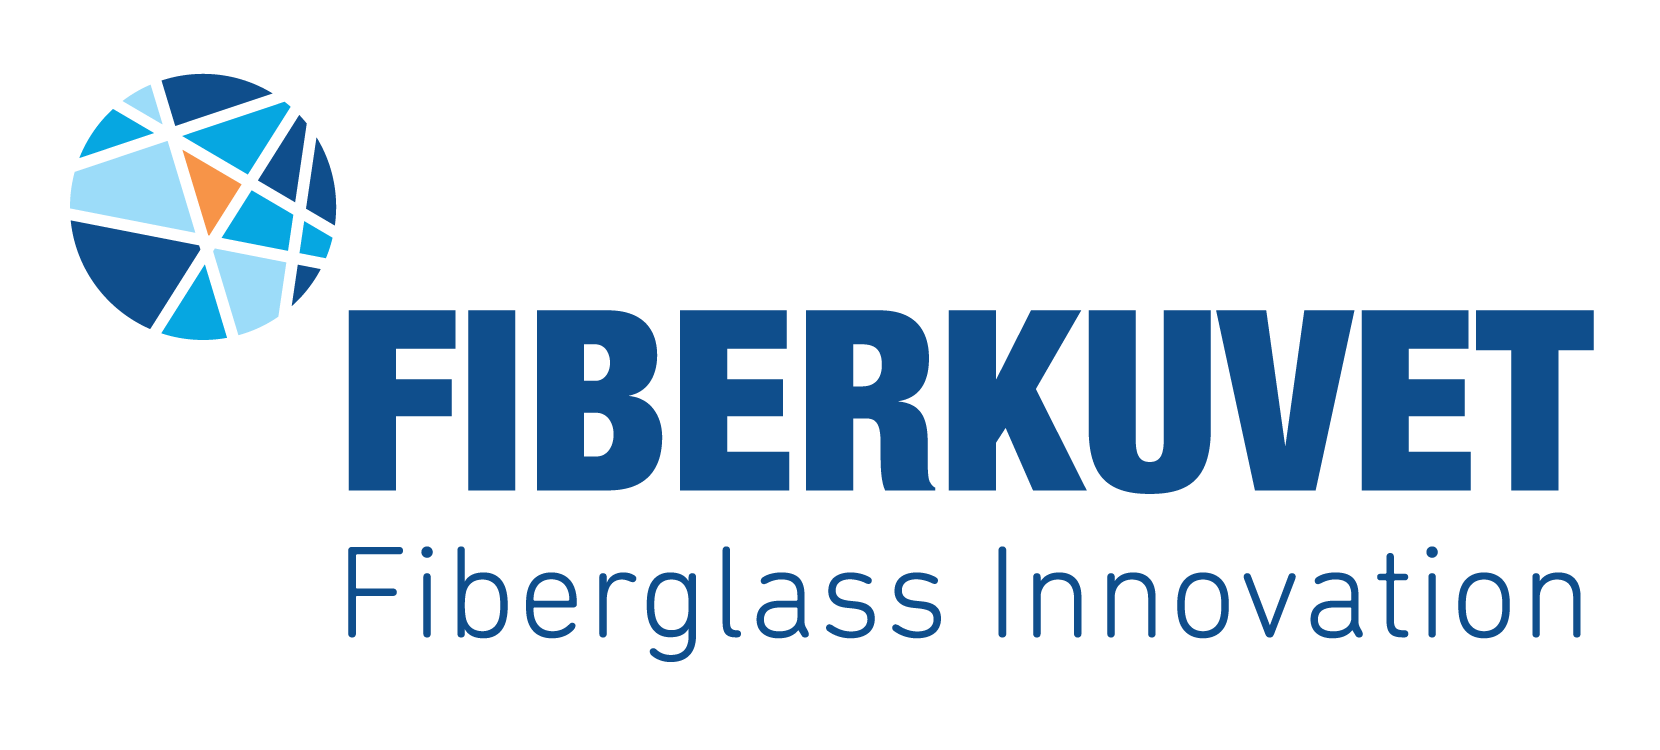 Fiberkuvet - FiberGlass Innovation